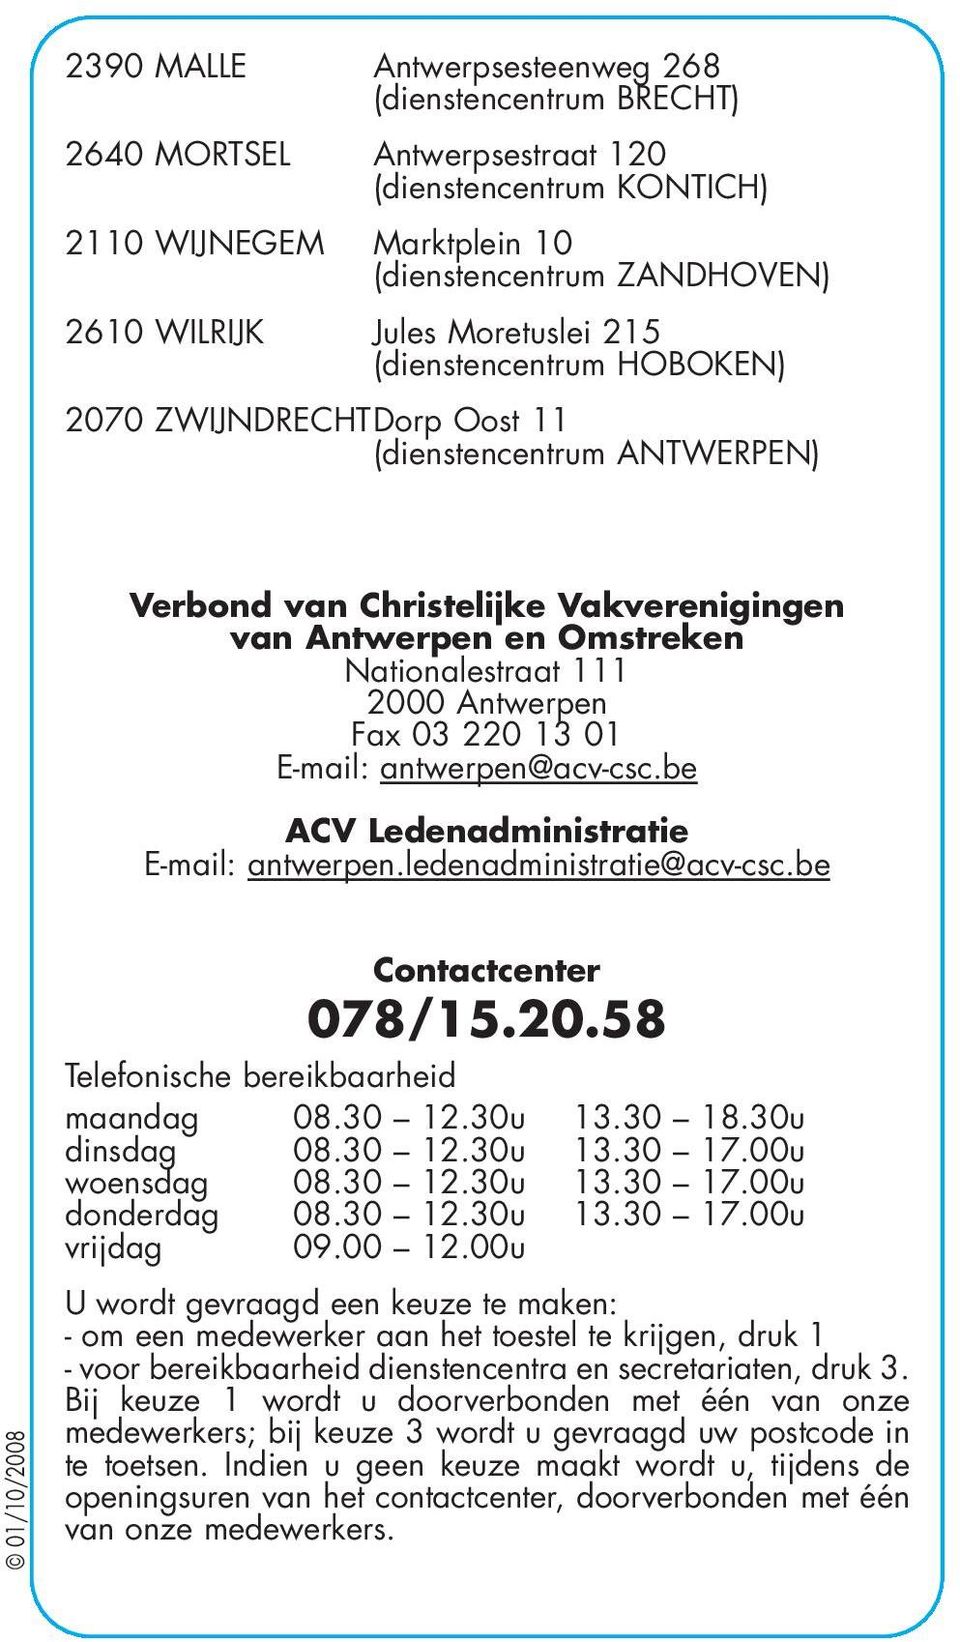 Antwerpen Fax 03 220 13 01 E-mail: antwerpen@acv-csc.be ACV Ledenadministratie E-mail: antwerpen.ledenadministratie@acv-csc.be 01/10/2008 Contactcenter 078/15.20.58 Telefonische bereikbaarheid maandag 08.